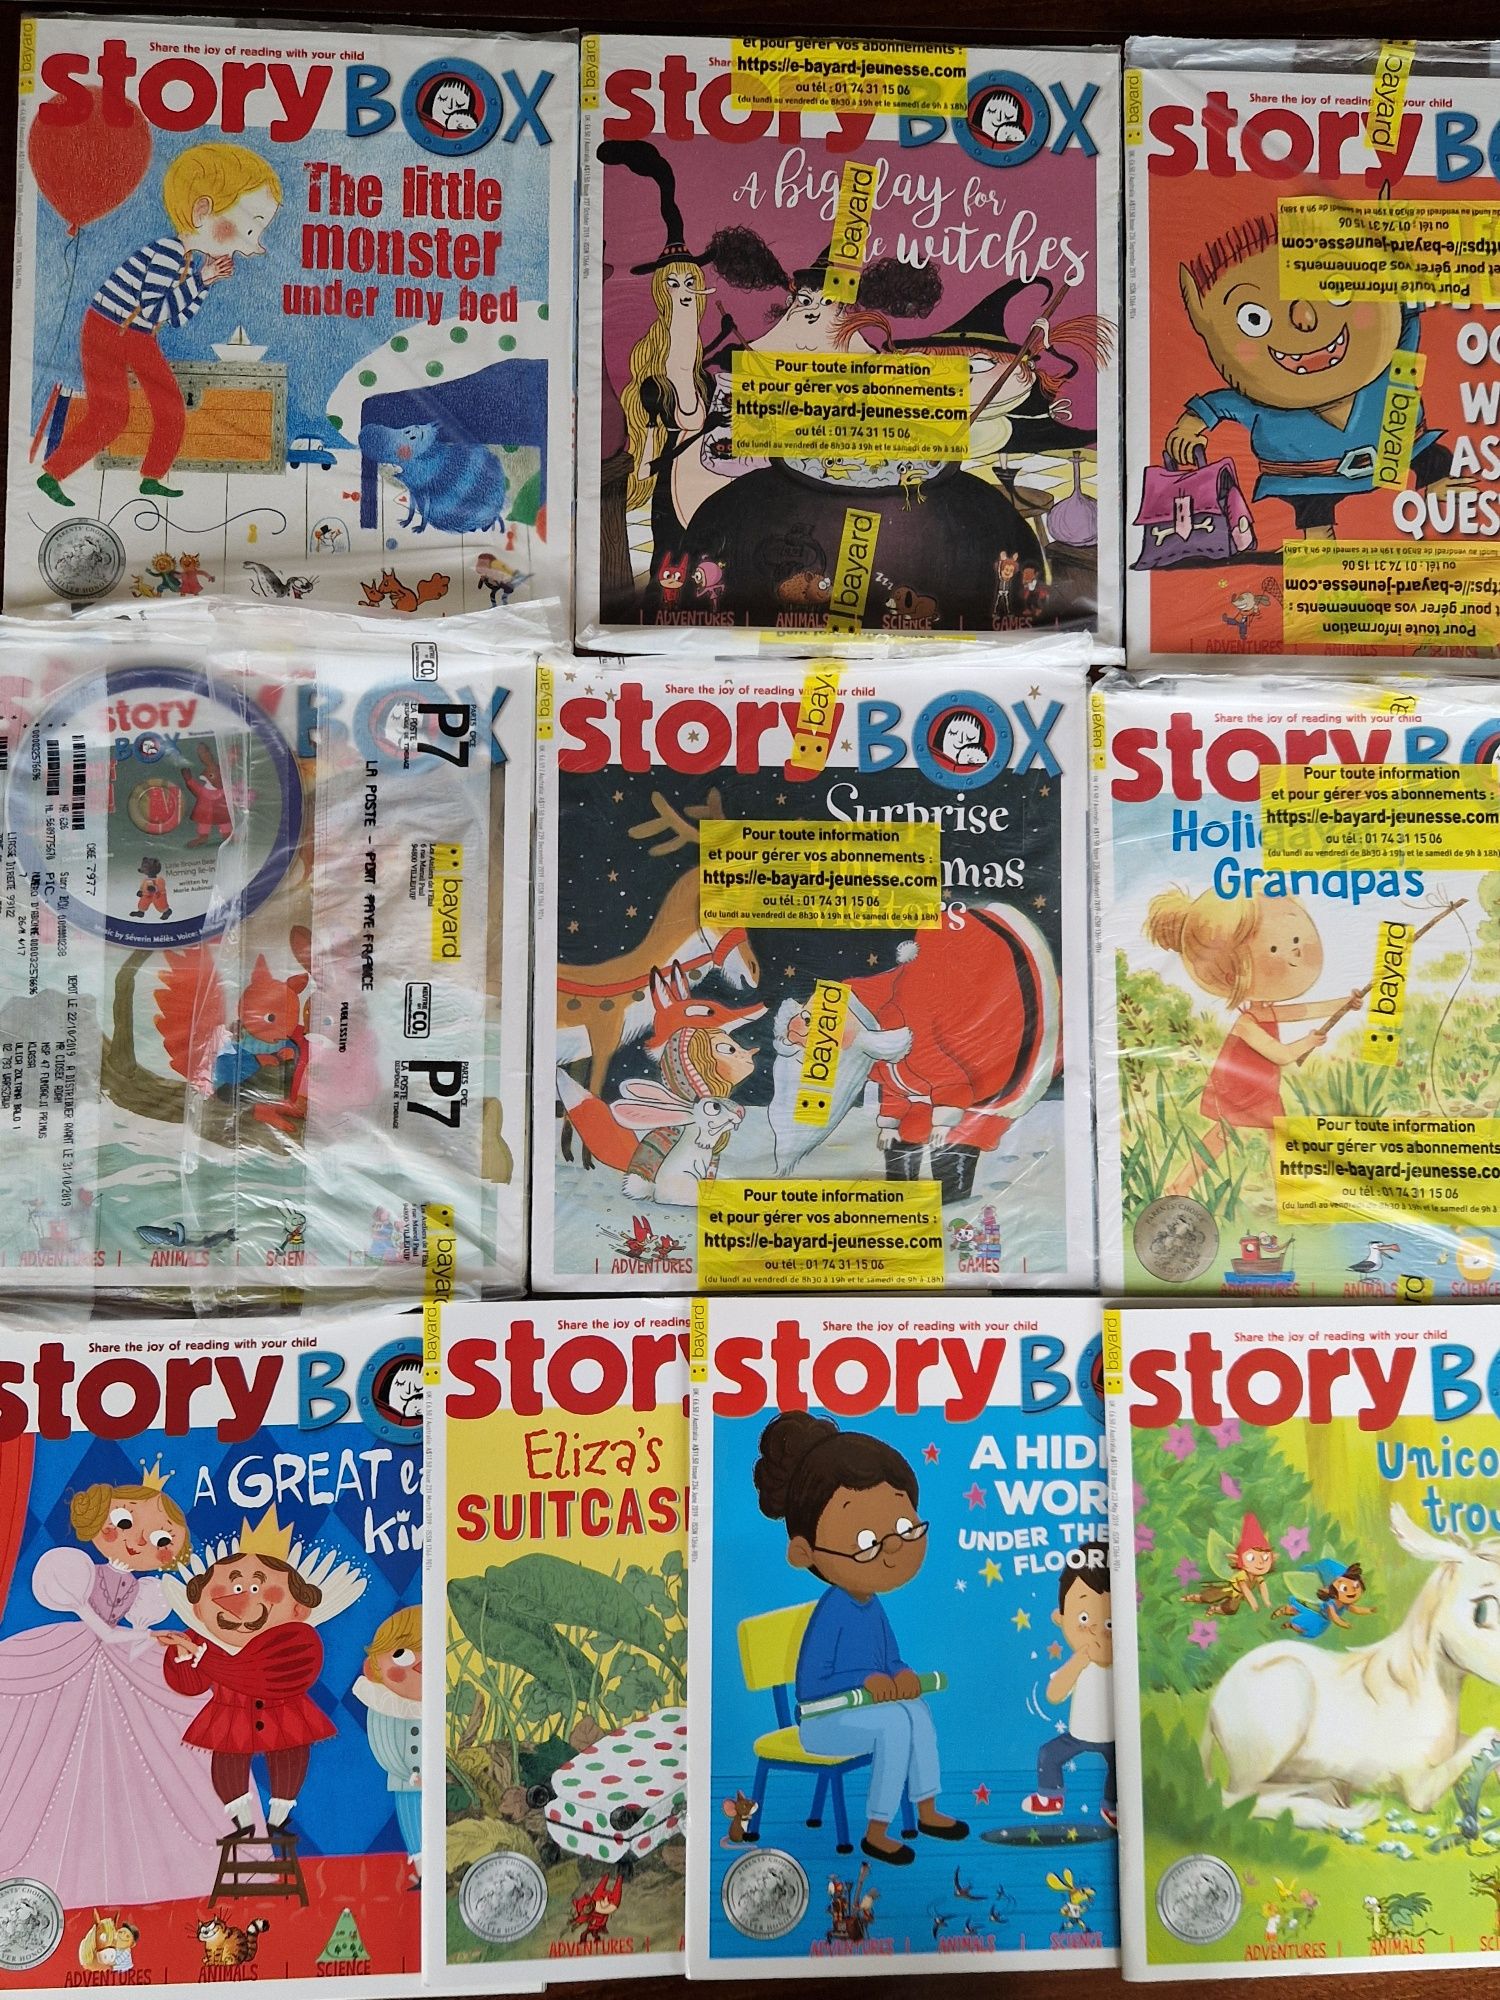 Story box magazyn dla dzieci w jęz. angielskim